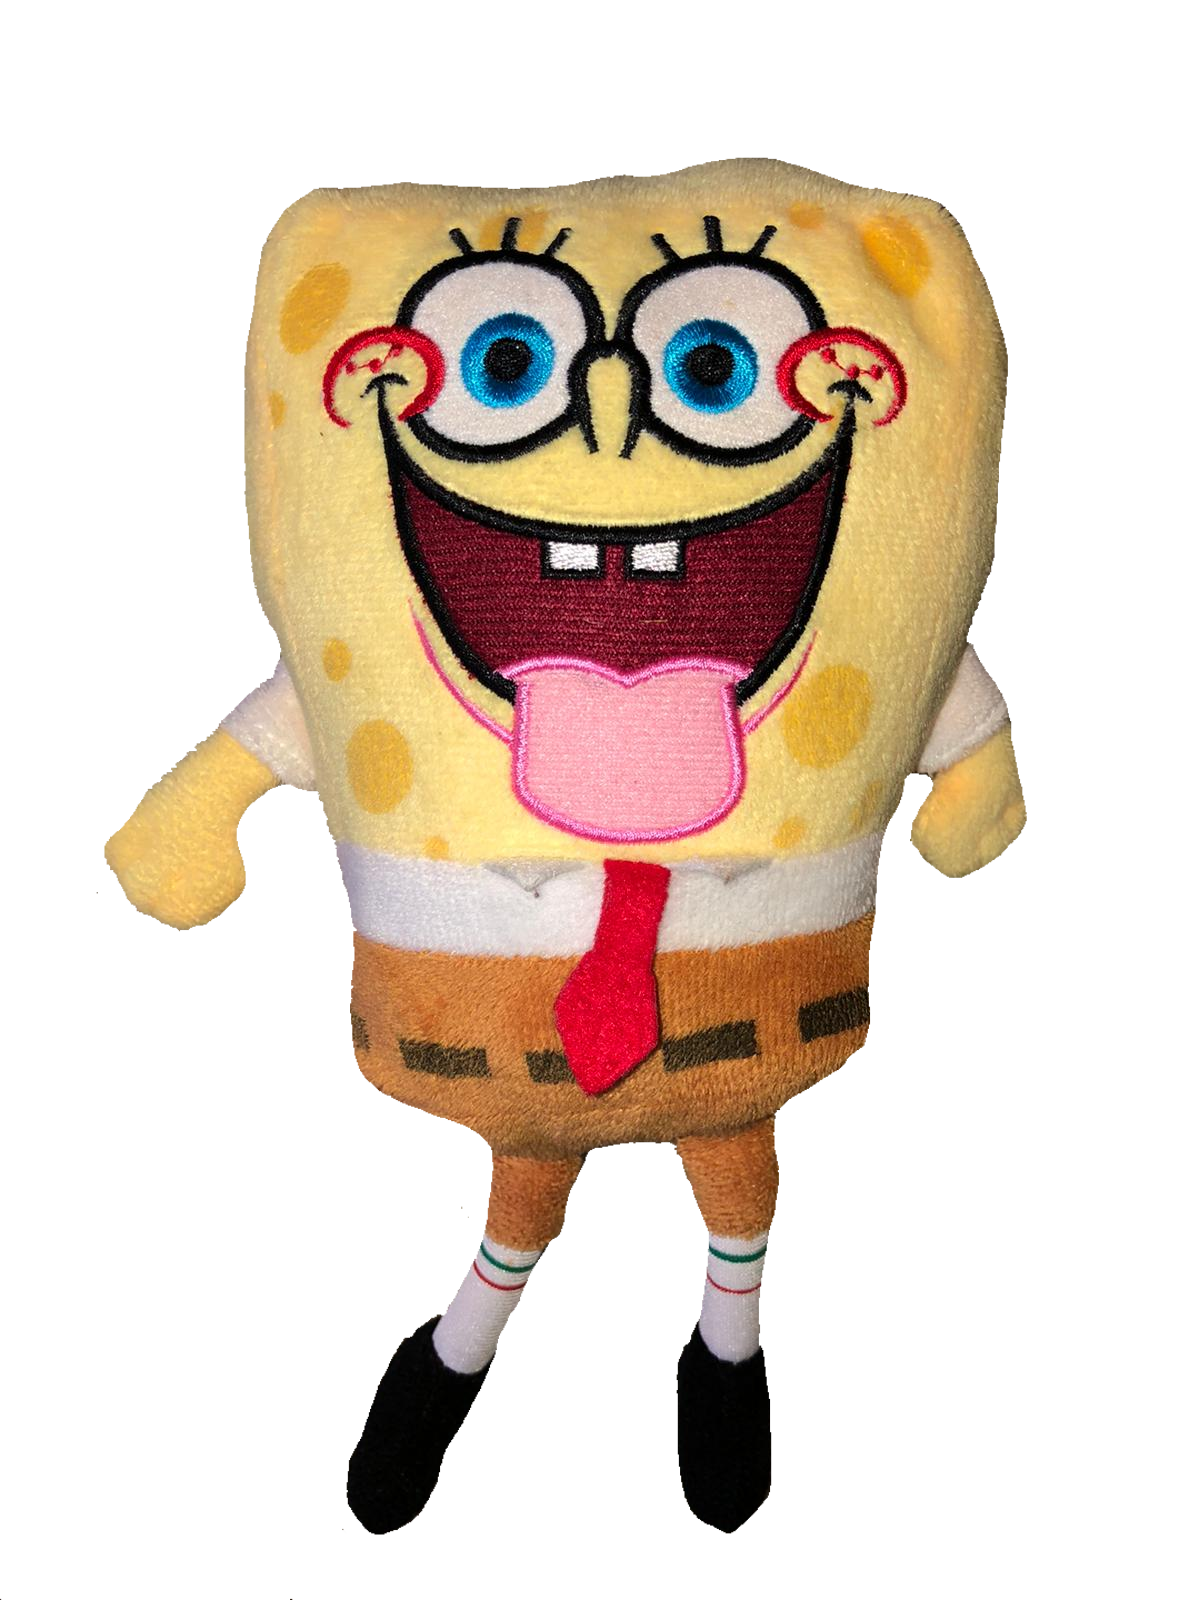 Sponge Bob Square Pants and Patrick – Alexa's Hugs